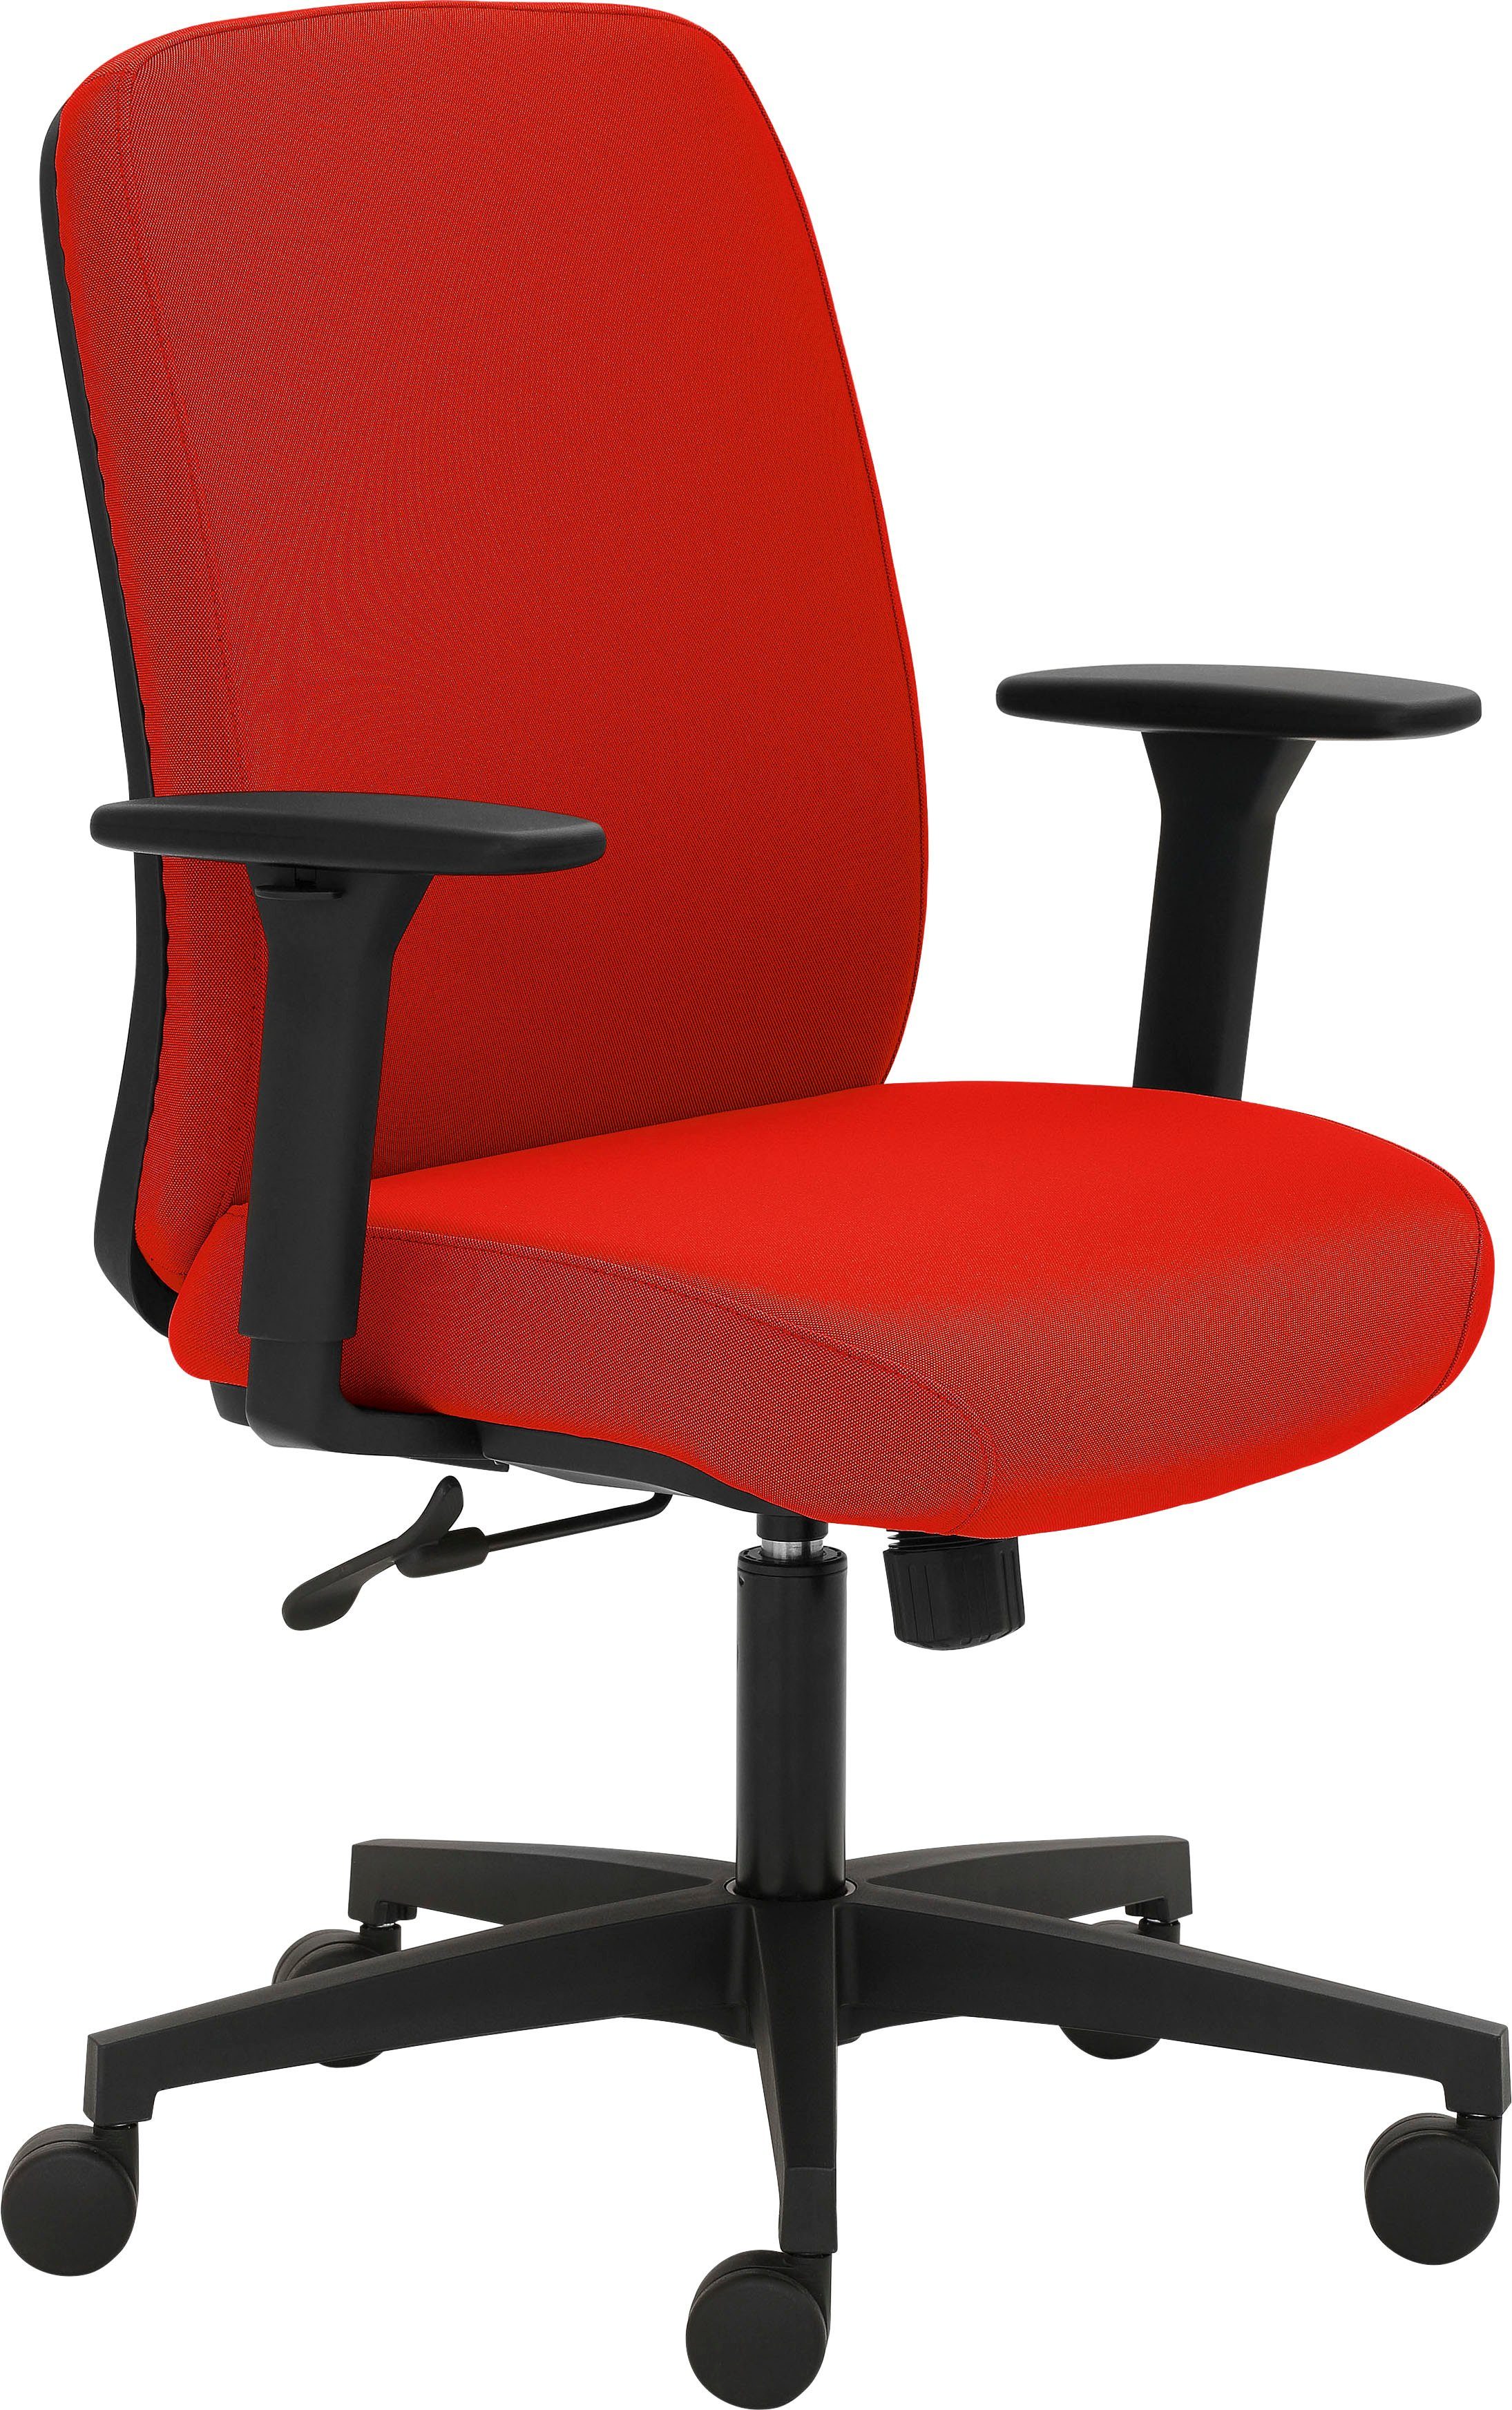 Mayer Sitzmöbel Drehstuhl 2219, GS-zertifiziert, extra starke Polsterung für maximalen Sitzkomfort